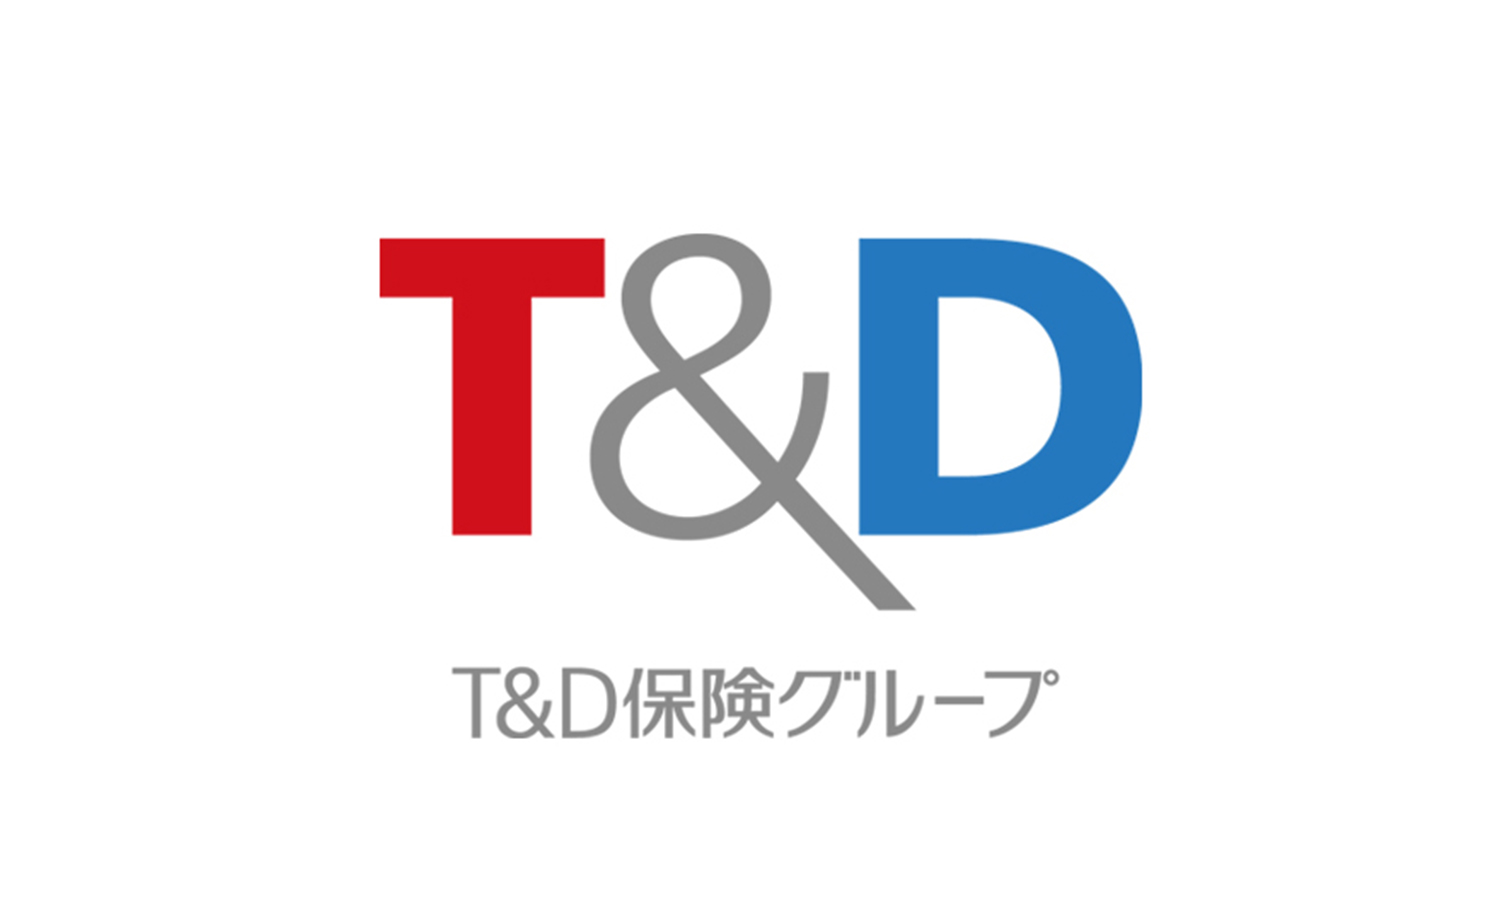 T&D Insurance Group  Branding & Design｜Bravis International